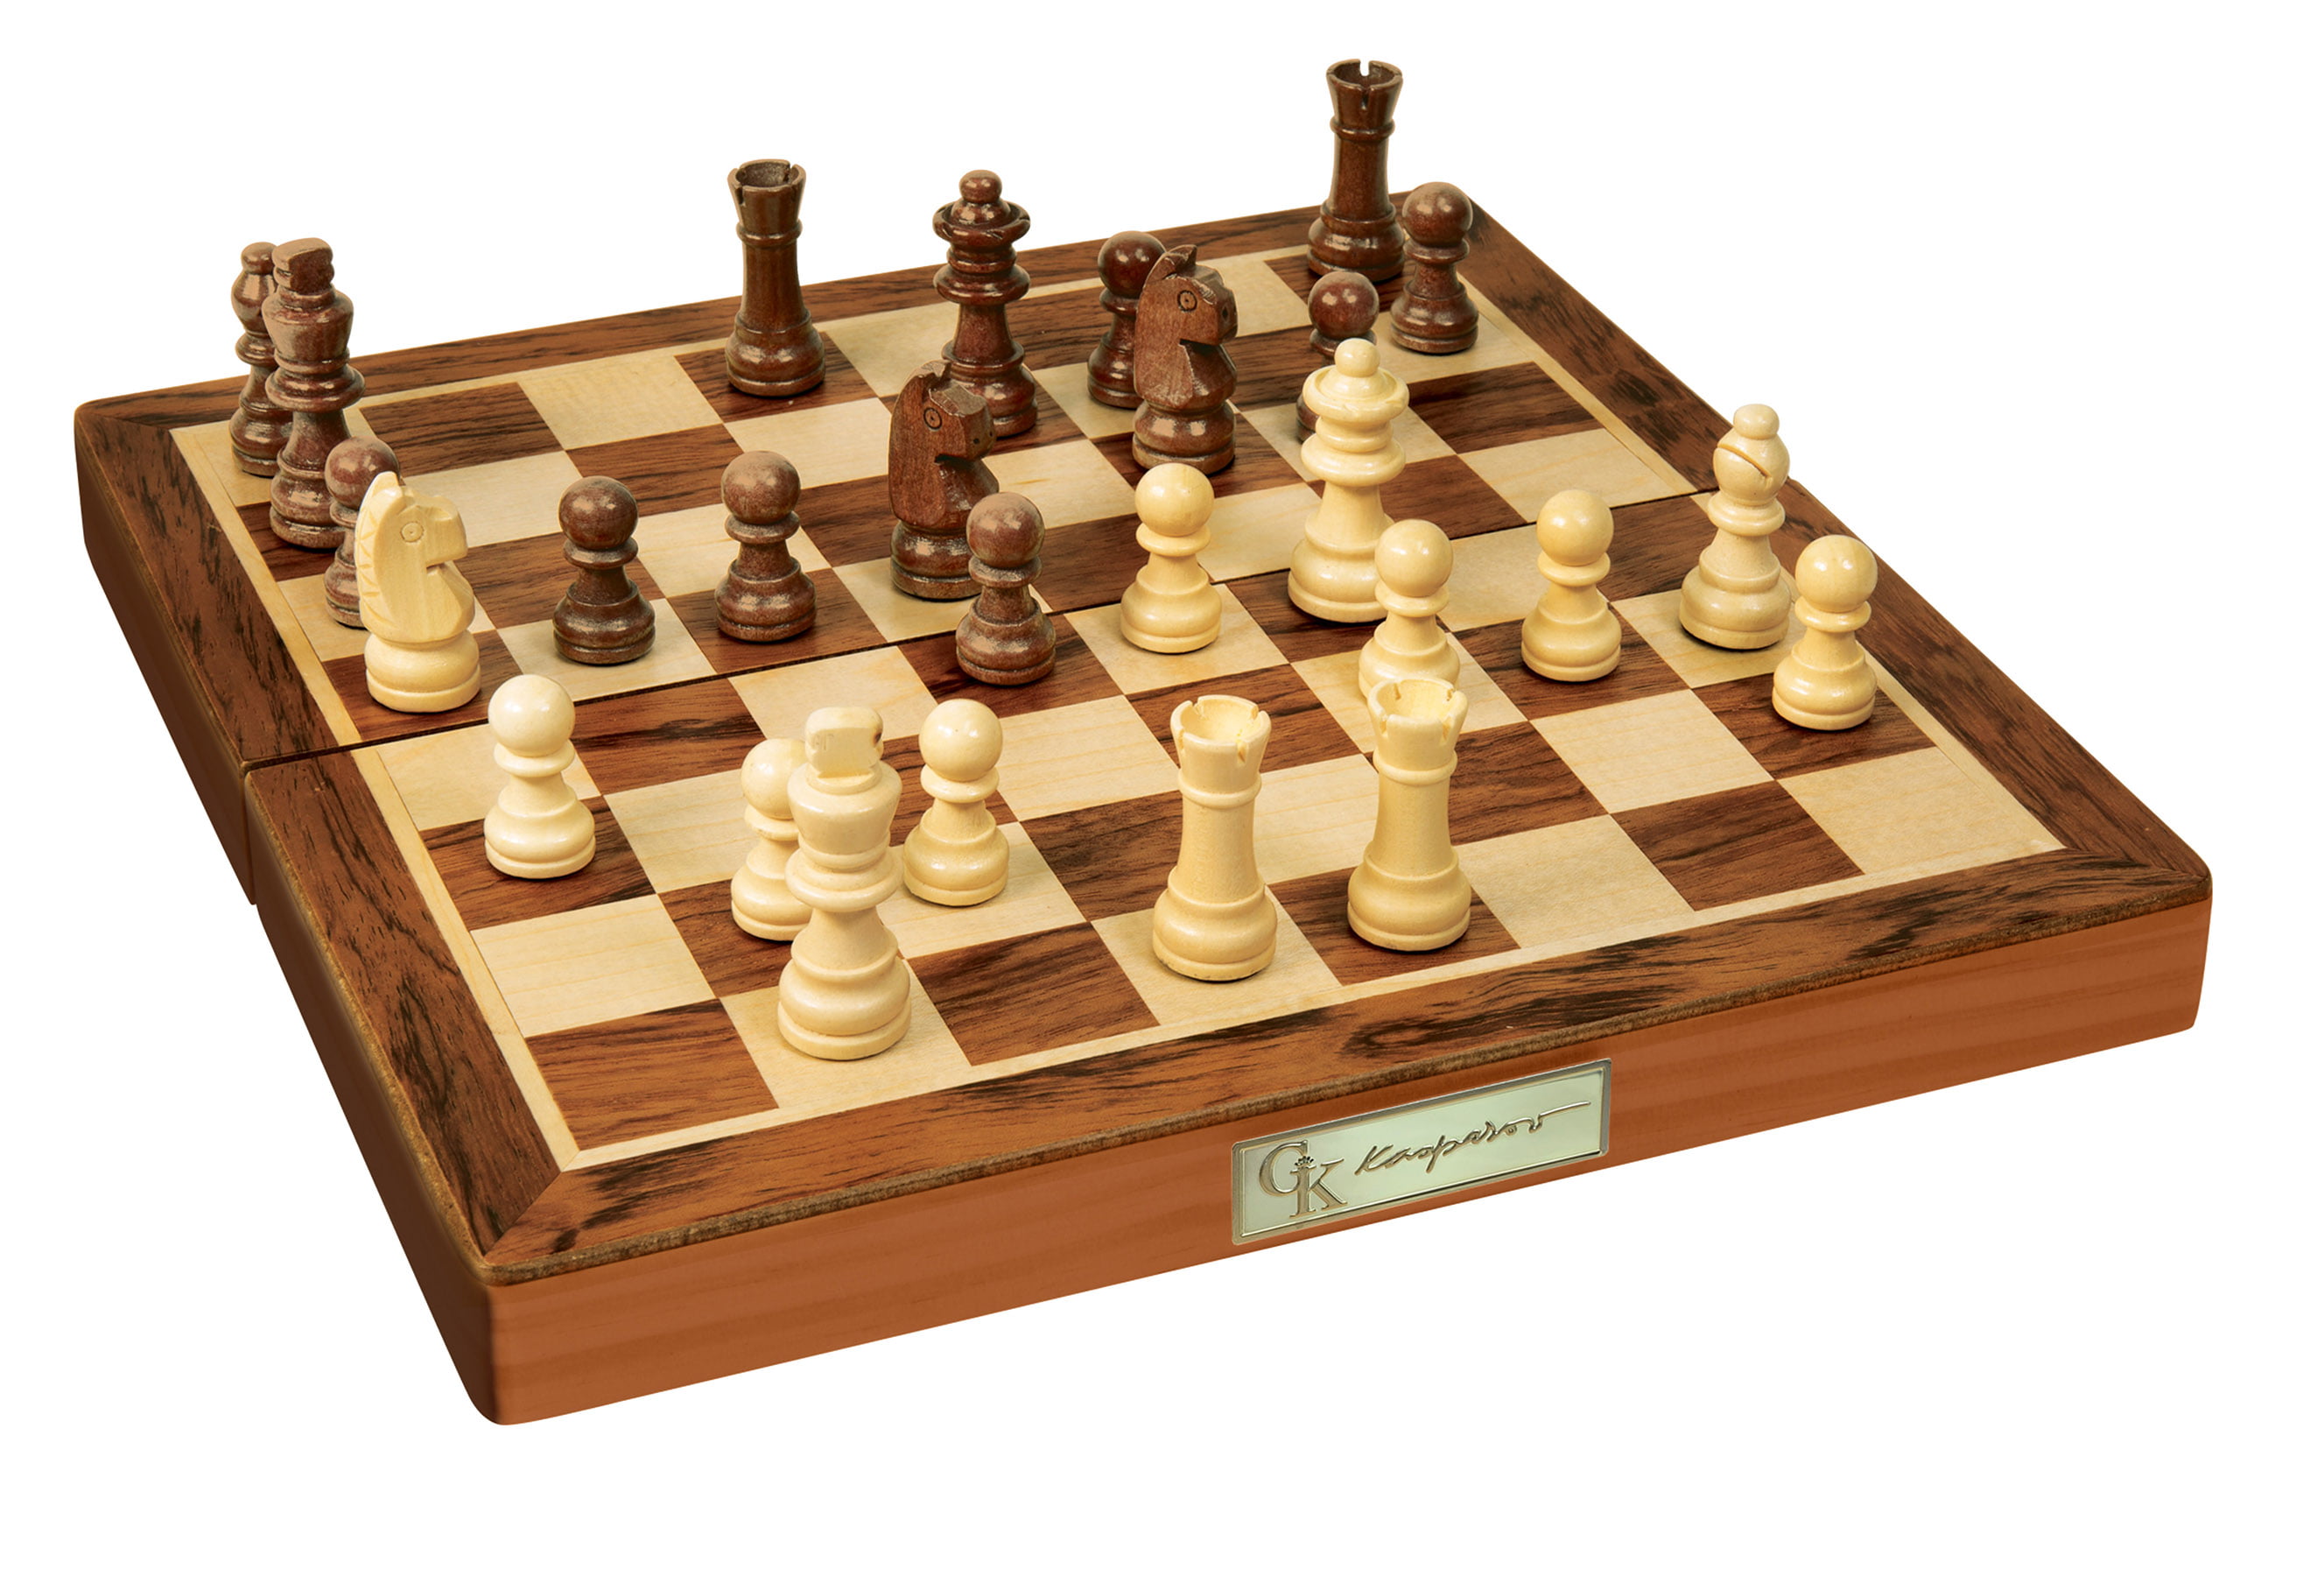 Livro O xadrez monumental de garry kasparov em Promoção na Americanas